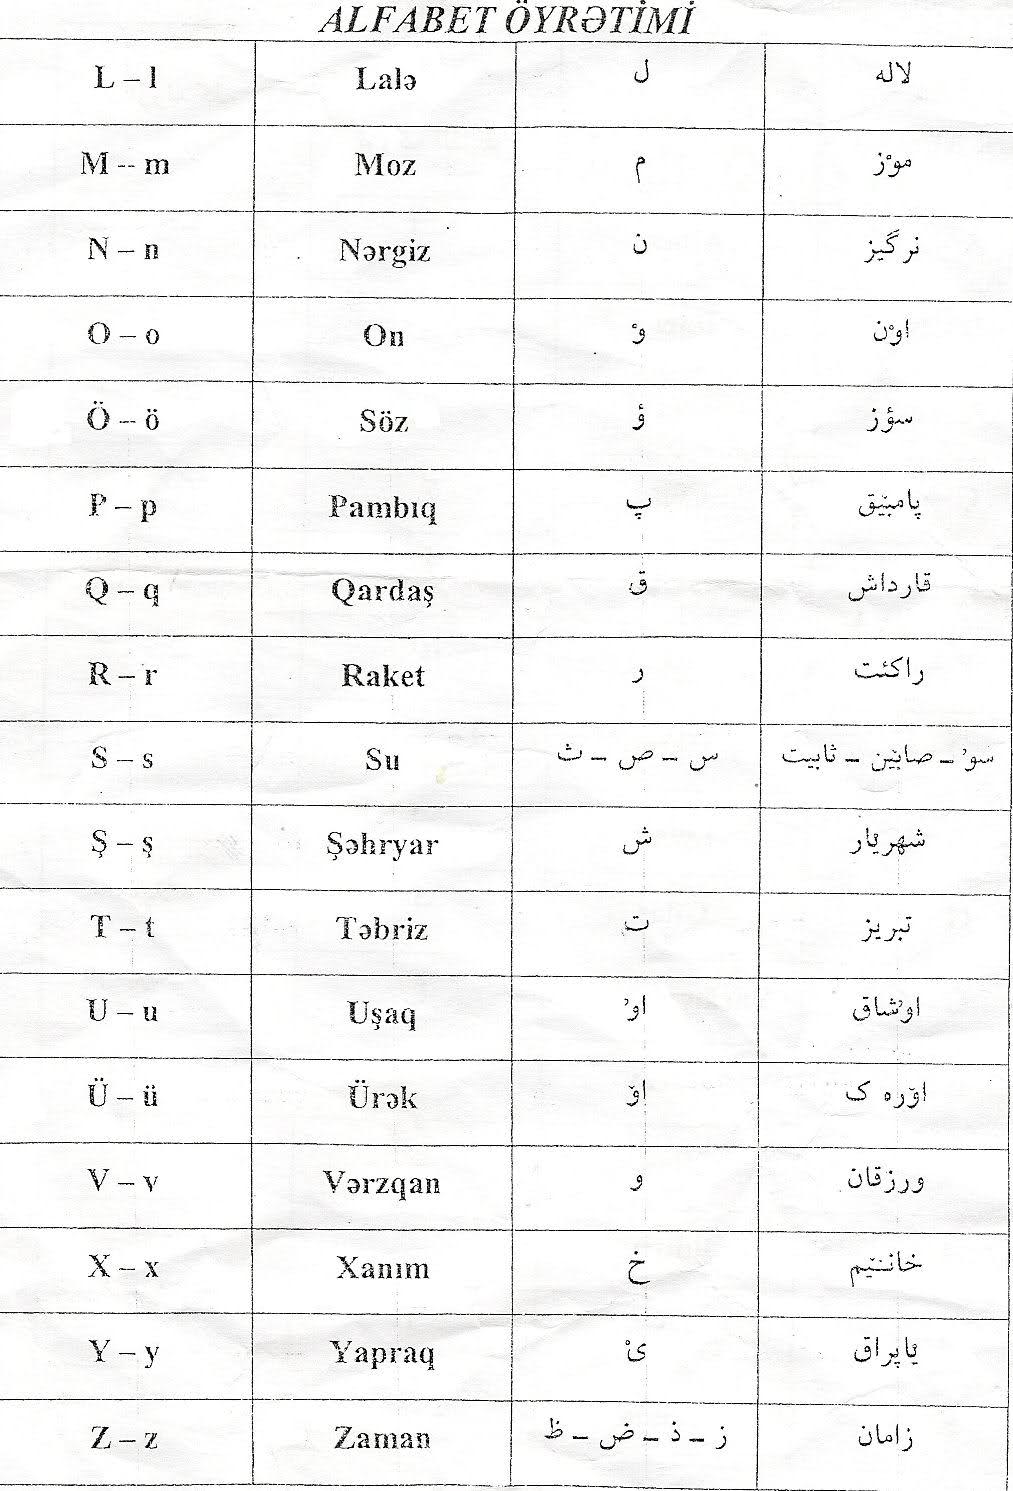 معنی کلمه ترکی به فارسی
